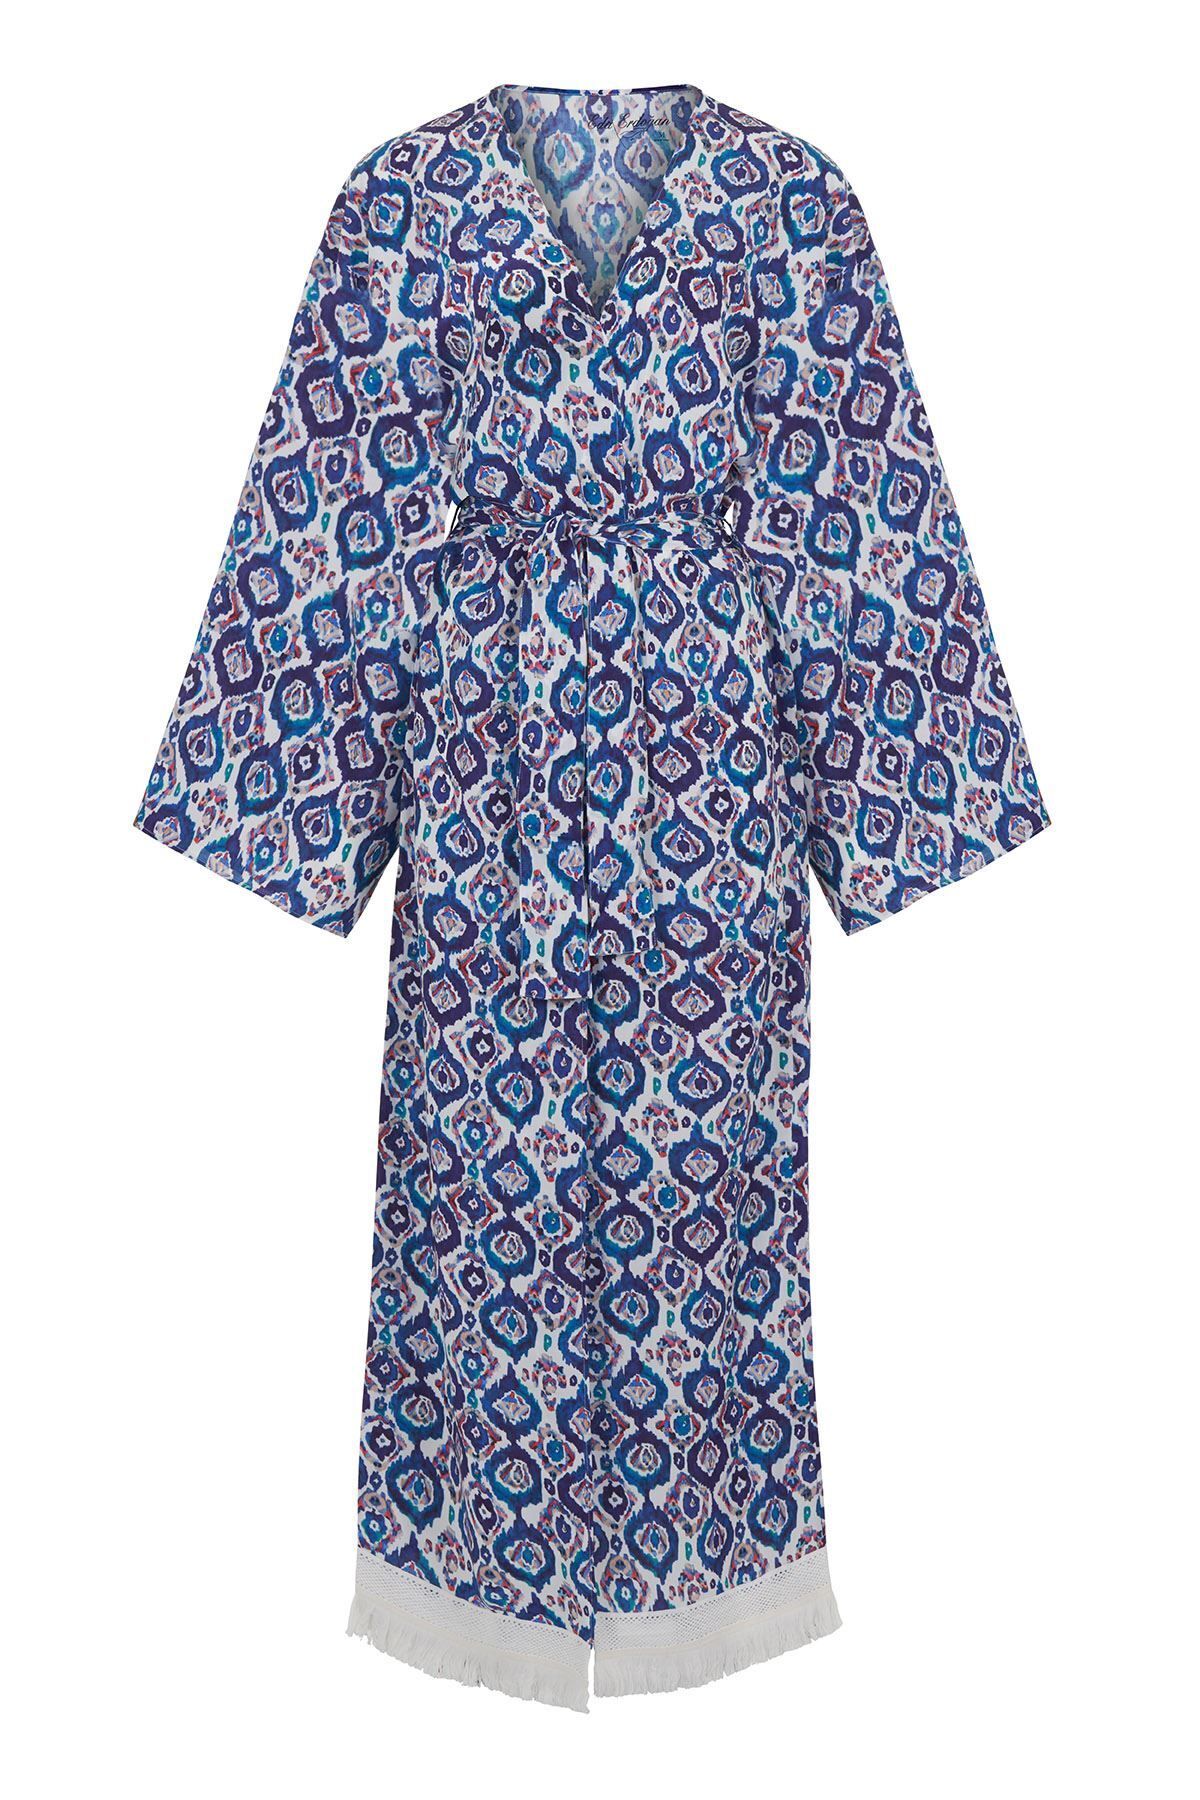 Eda Erdoğan Blue Art Uzun Kimono